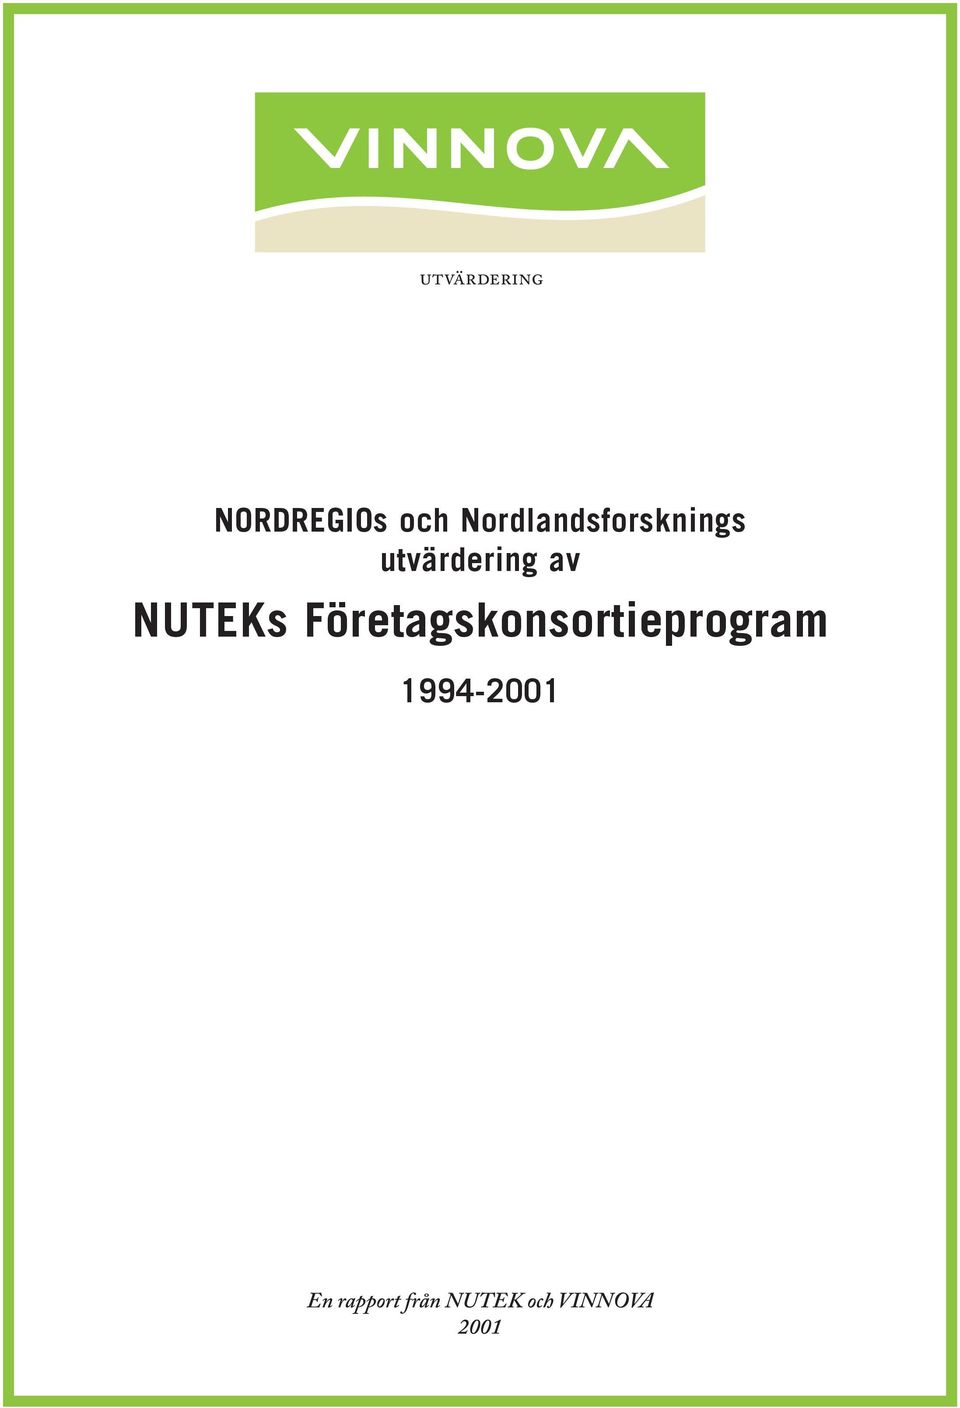 NUTEKs Företagskonsortieprogram